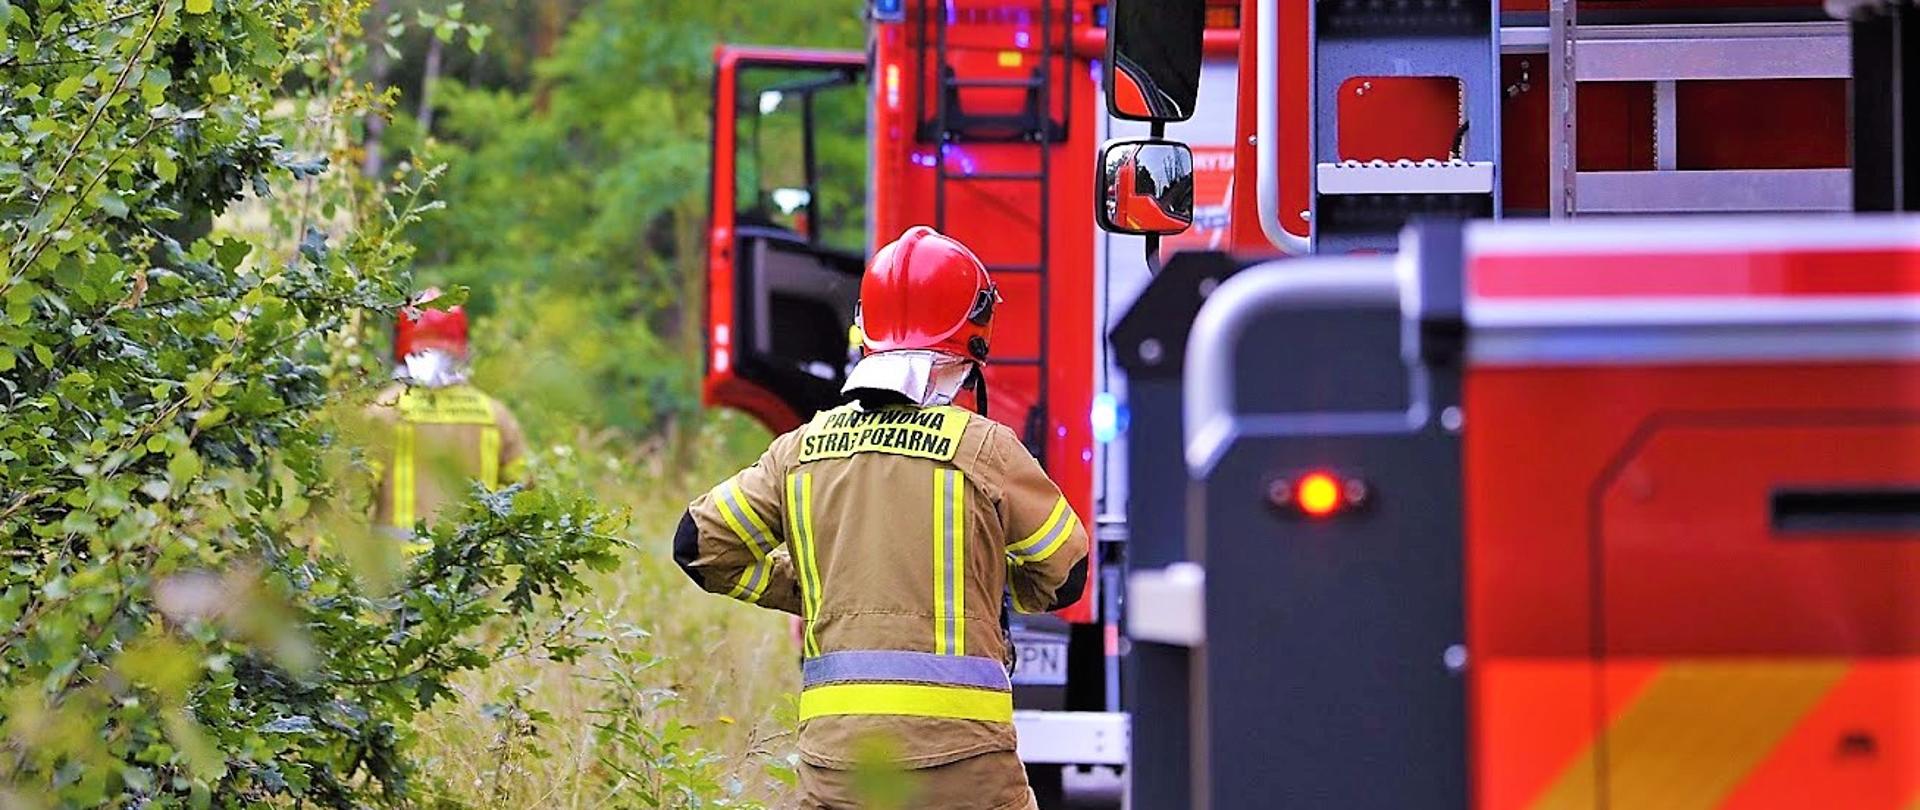 1. Samochody pożarnicze na drodze leśnej. Strażak w mundurze bojowym na poboczu stoi tyłem. W tle zielony las.